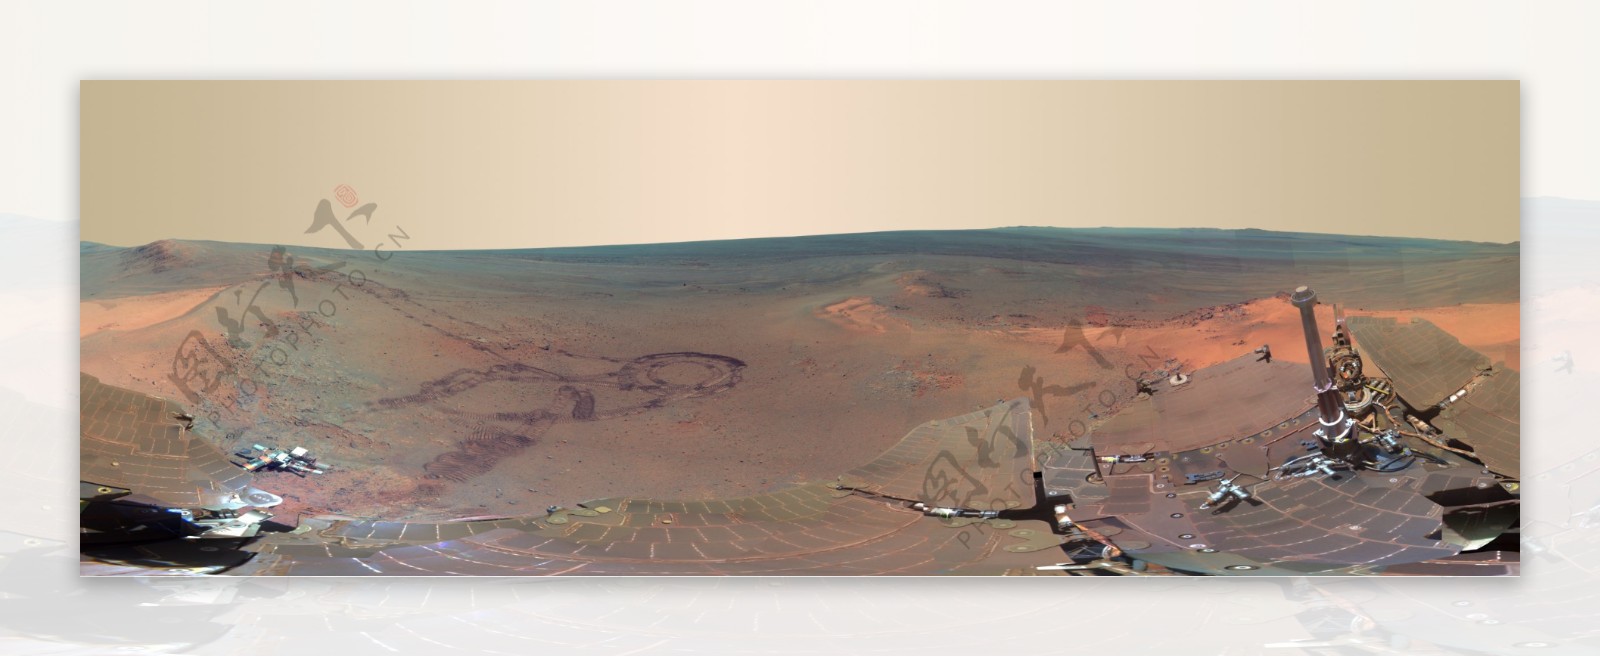 火星全景图有接痕图片